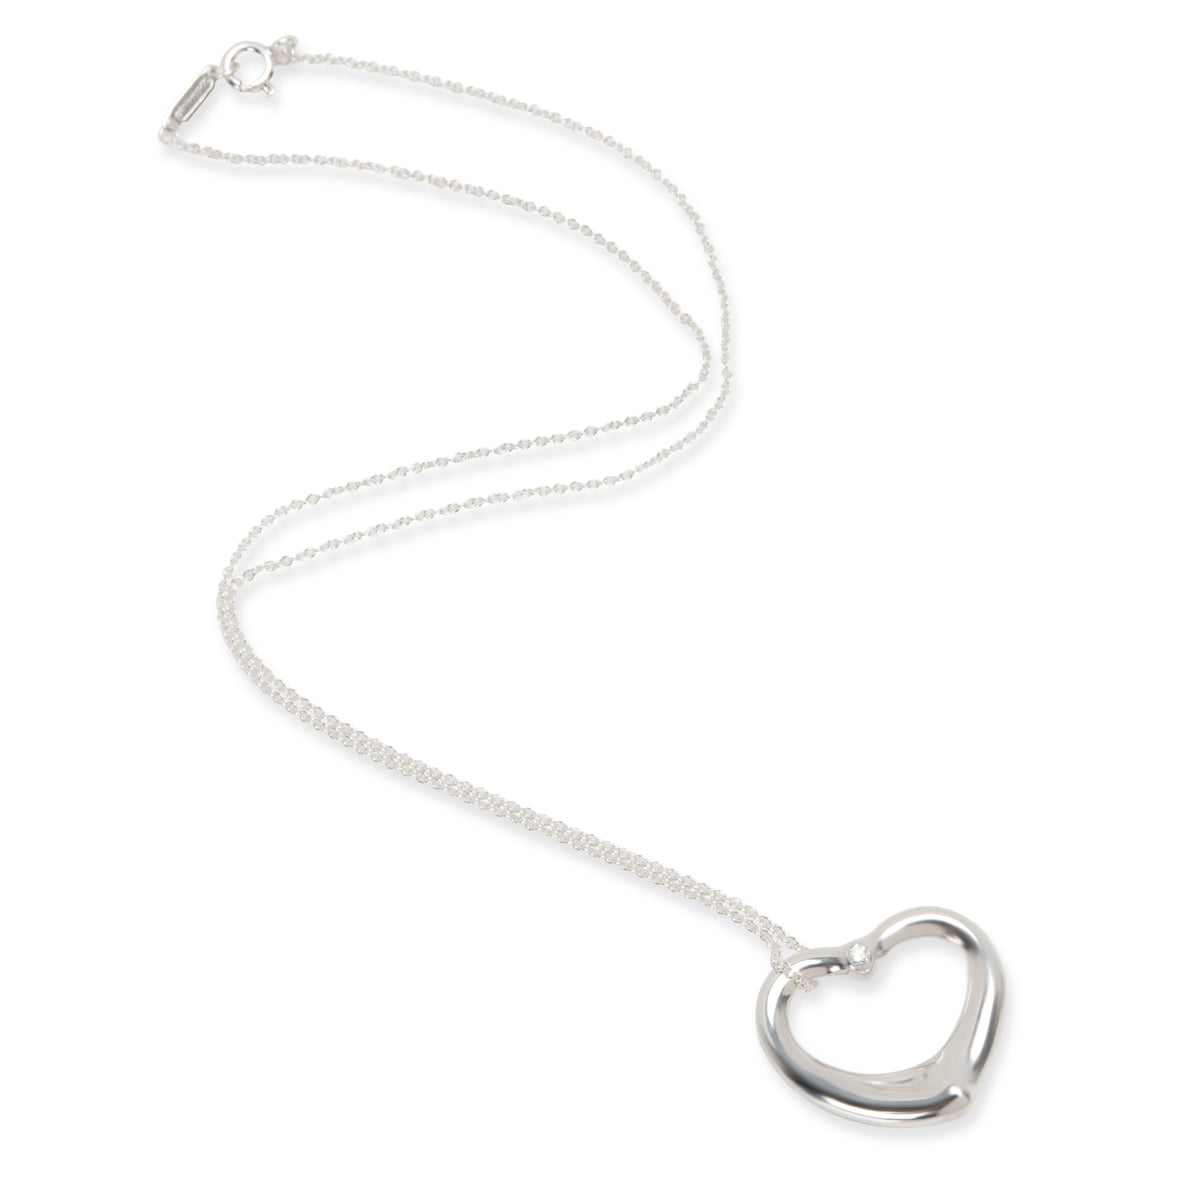 Tiffany & Co Elsa Peretti Open Heart Diamond Pendant in  Sterling Silver 0.03CTW